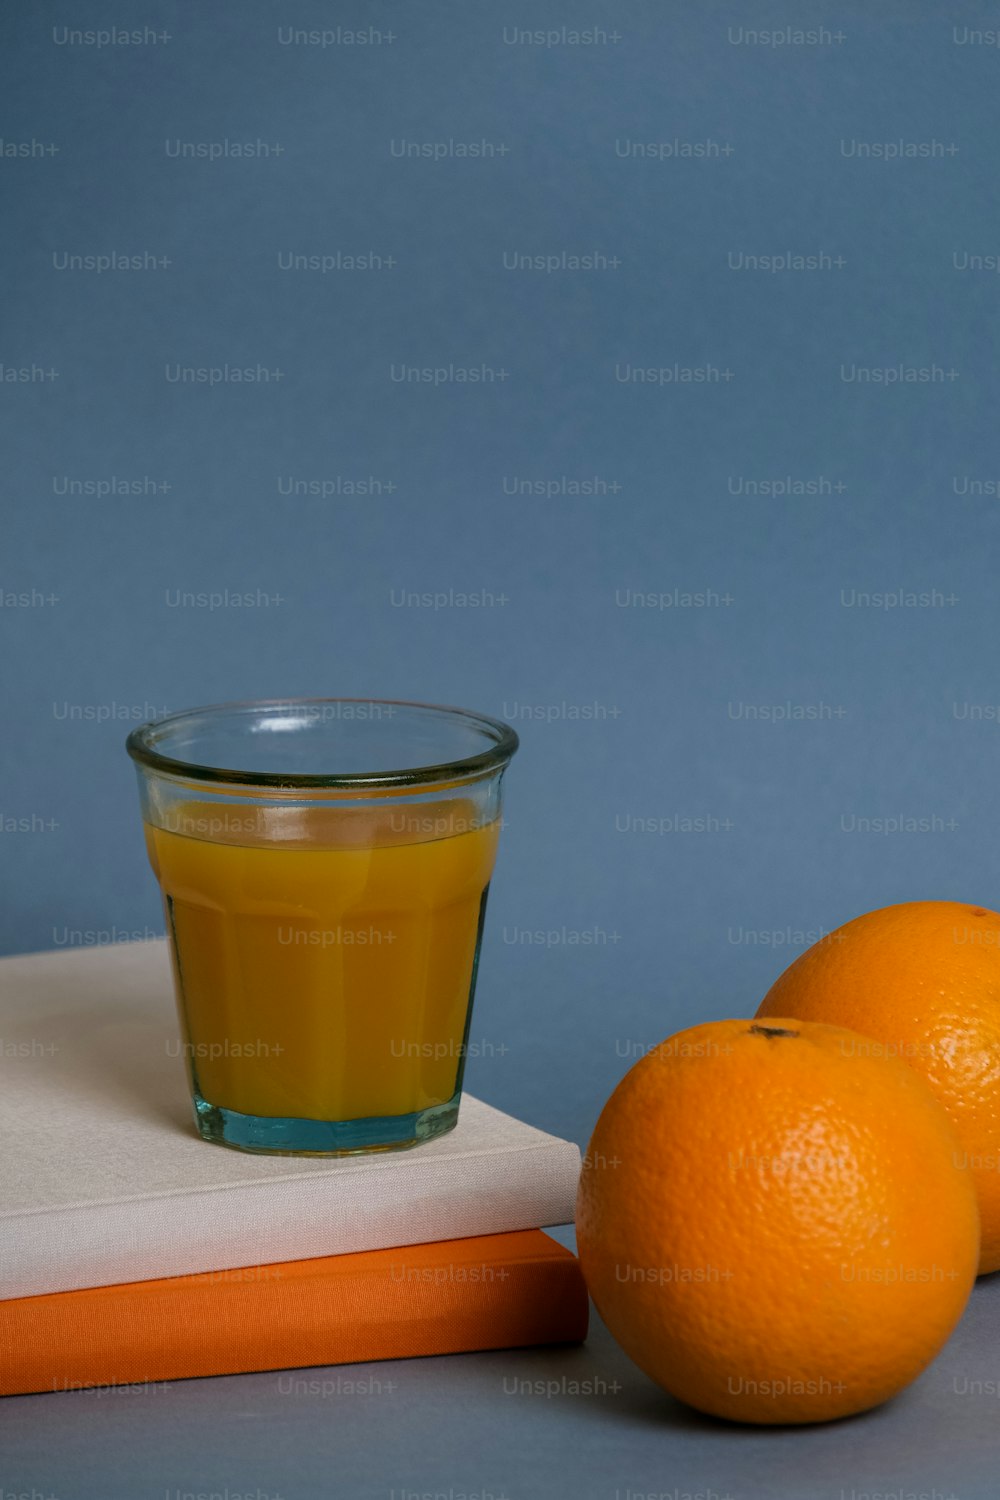 오렌지 세 개 옆에 오렌지 주스 한 잔